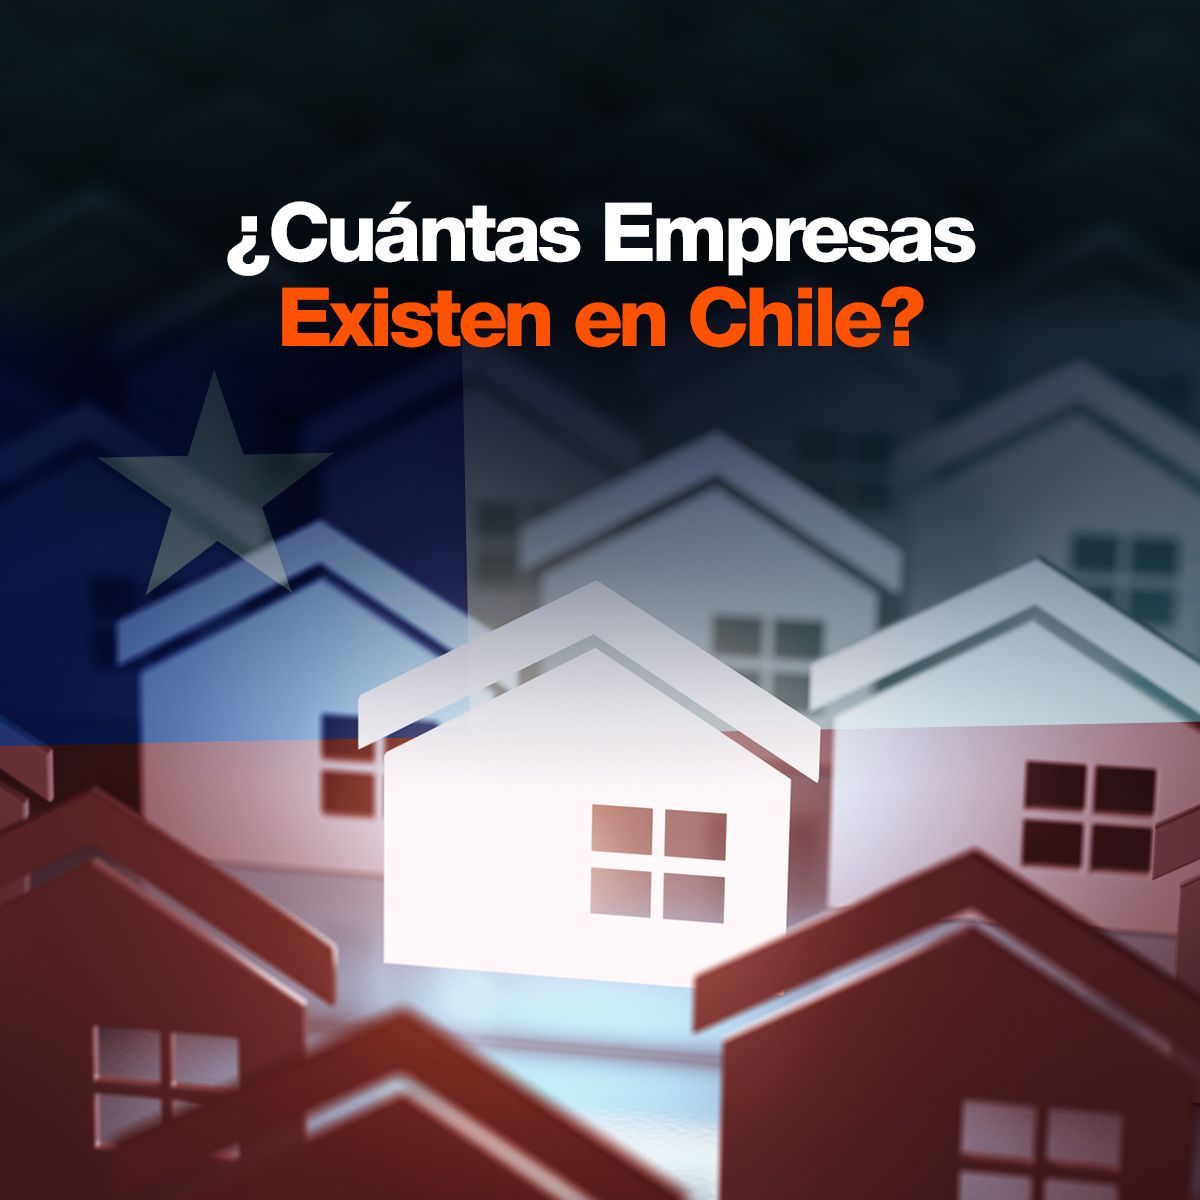 ¿Cuántas Empresas Existen en Chile?